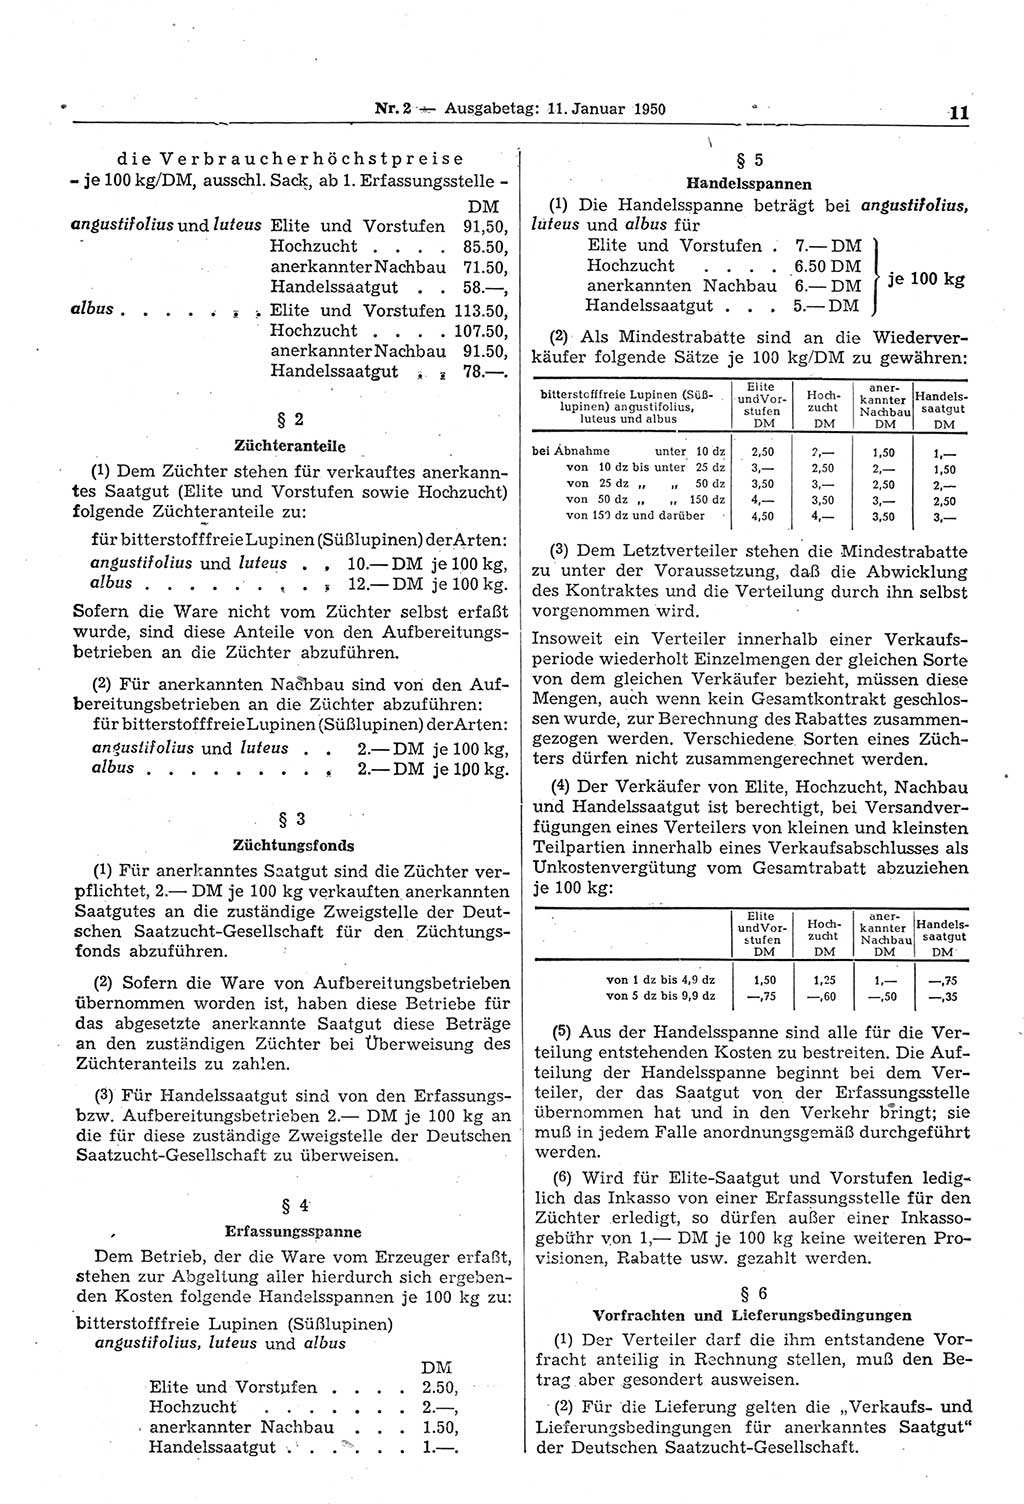 Gesetzblatt (GBl.) der Deutschen Demokratischen Republik (DDR) 1950, Seite 11 (GBl. DDR 1950, S. 11)